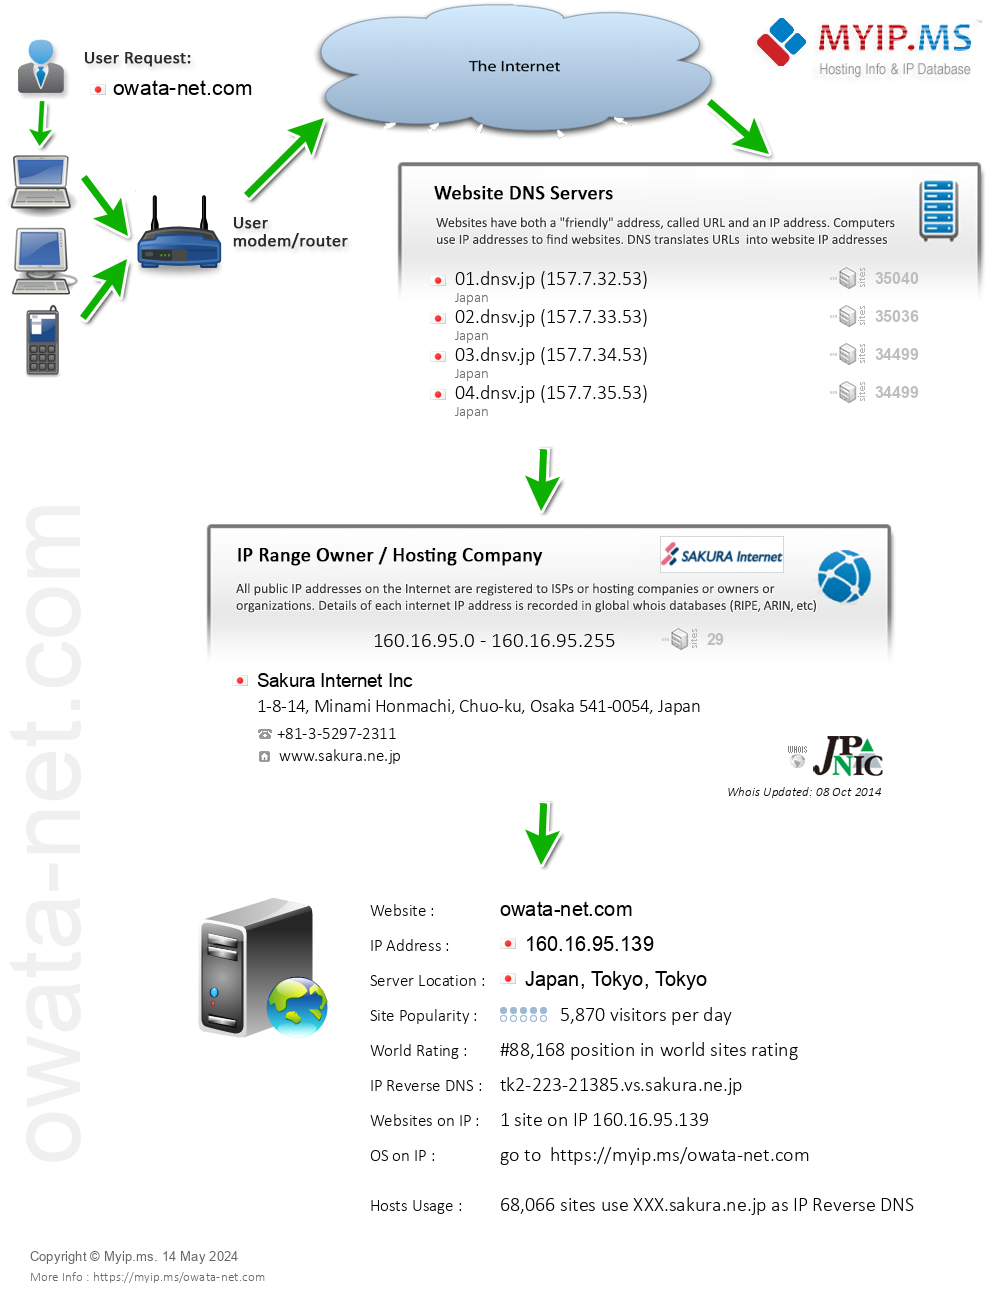 Owata-net.com - Website Hosting Visual IP Diagram